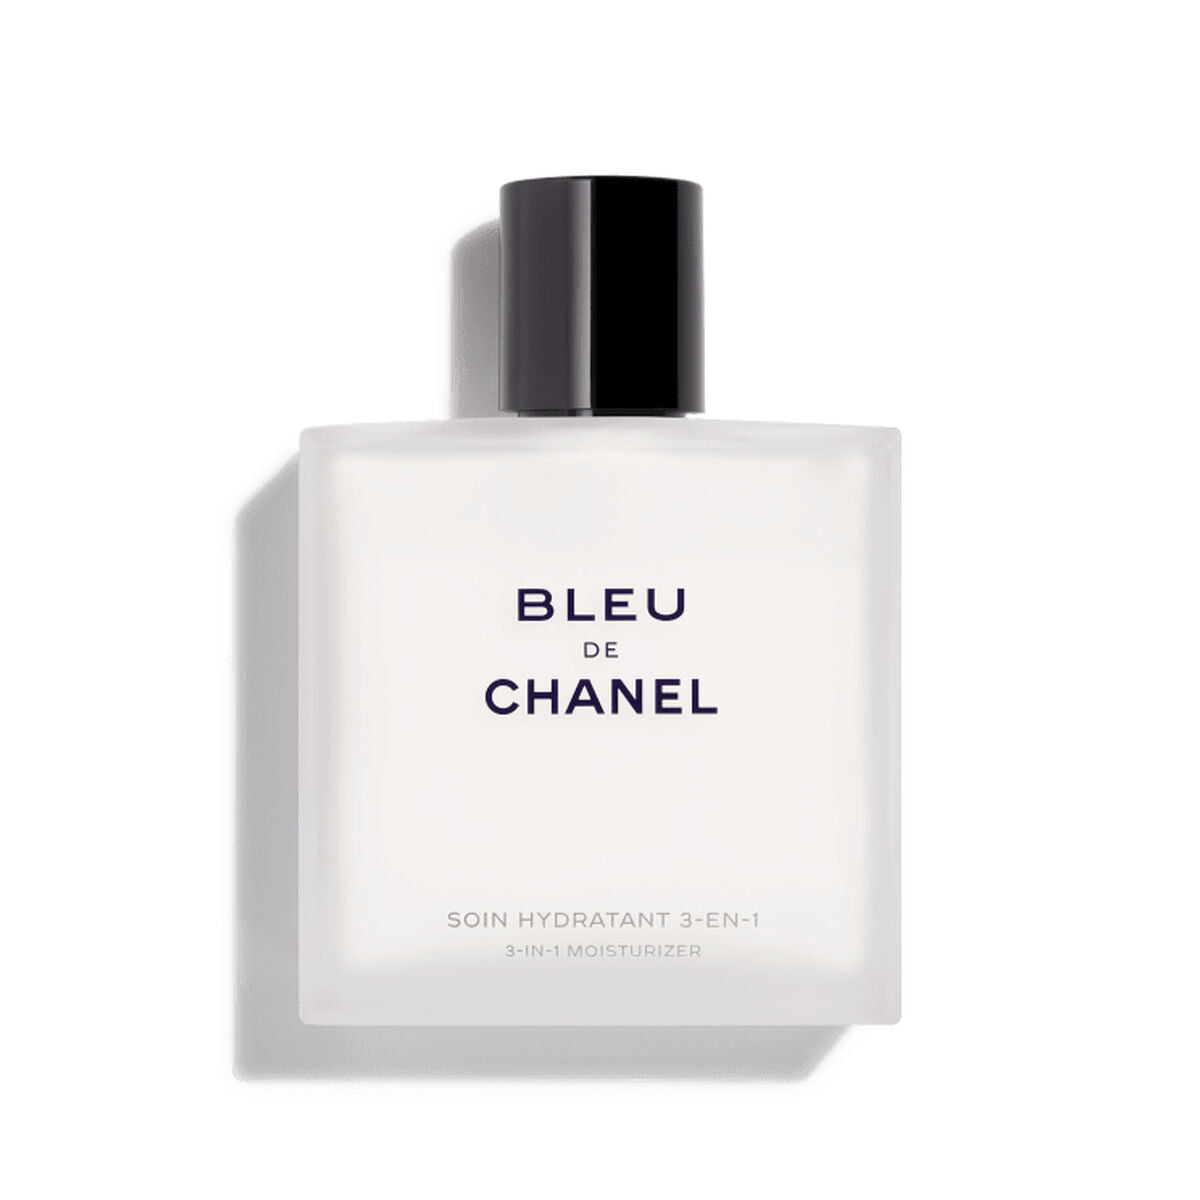 Kaufe Luxuriöses Aftershave-Balsam - Bleu de Chanel 90 ml bei AWK Flagship um € 93.00